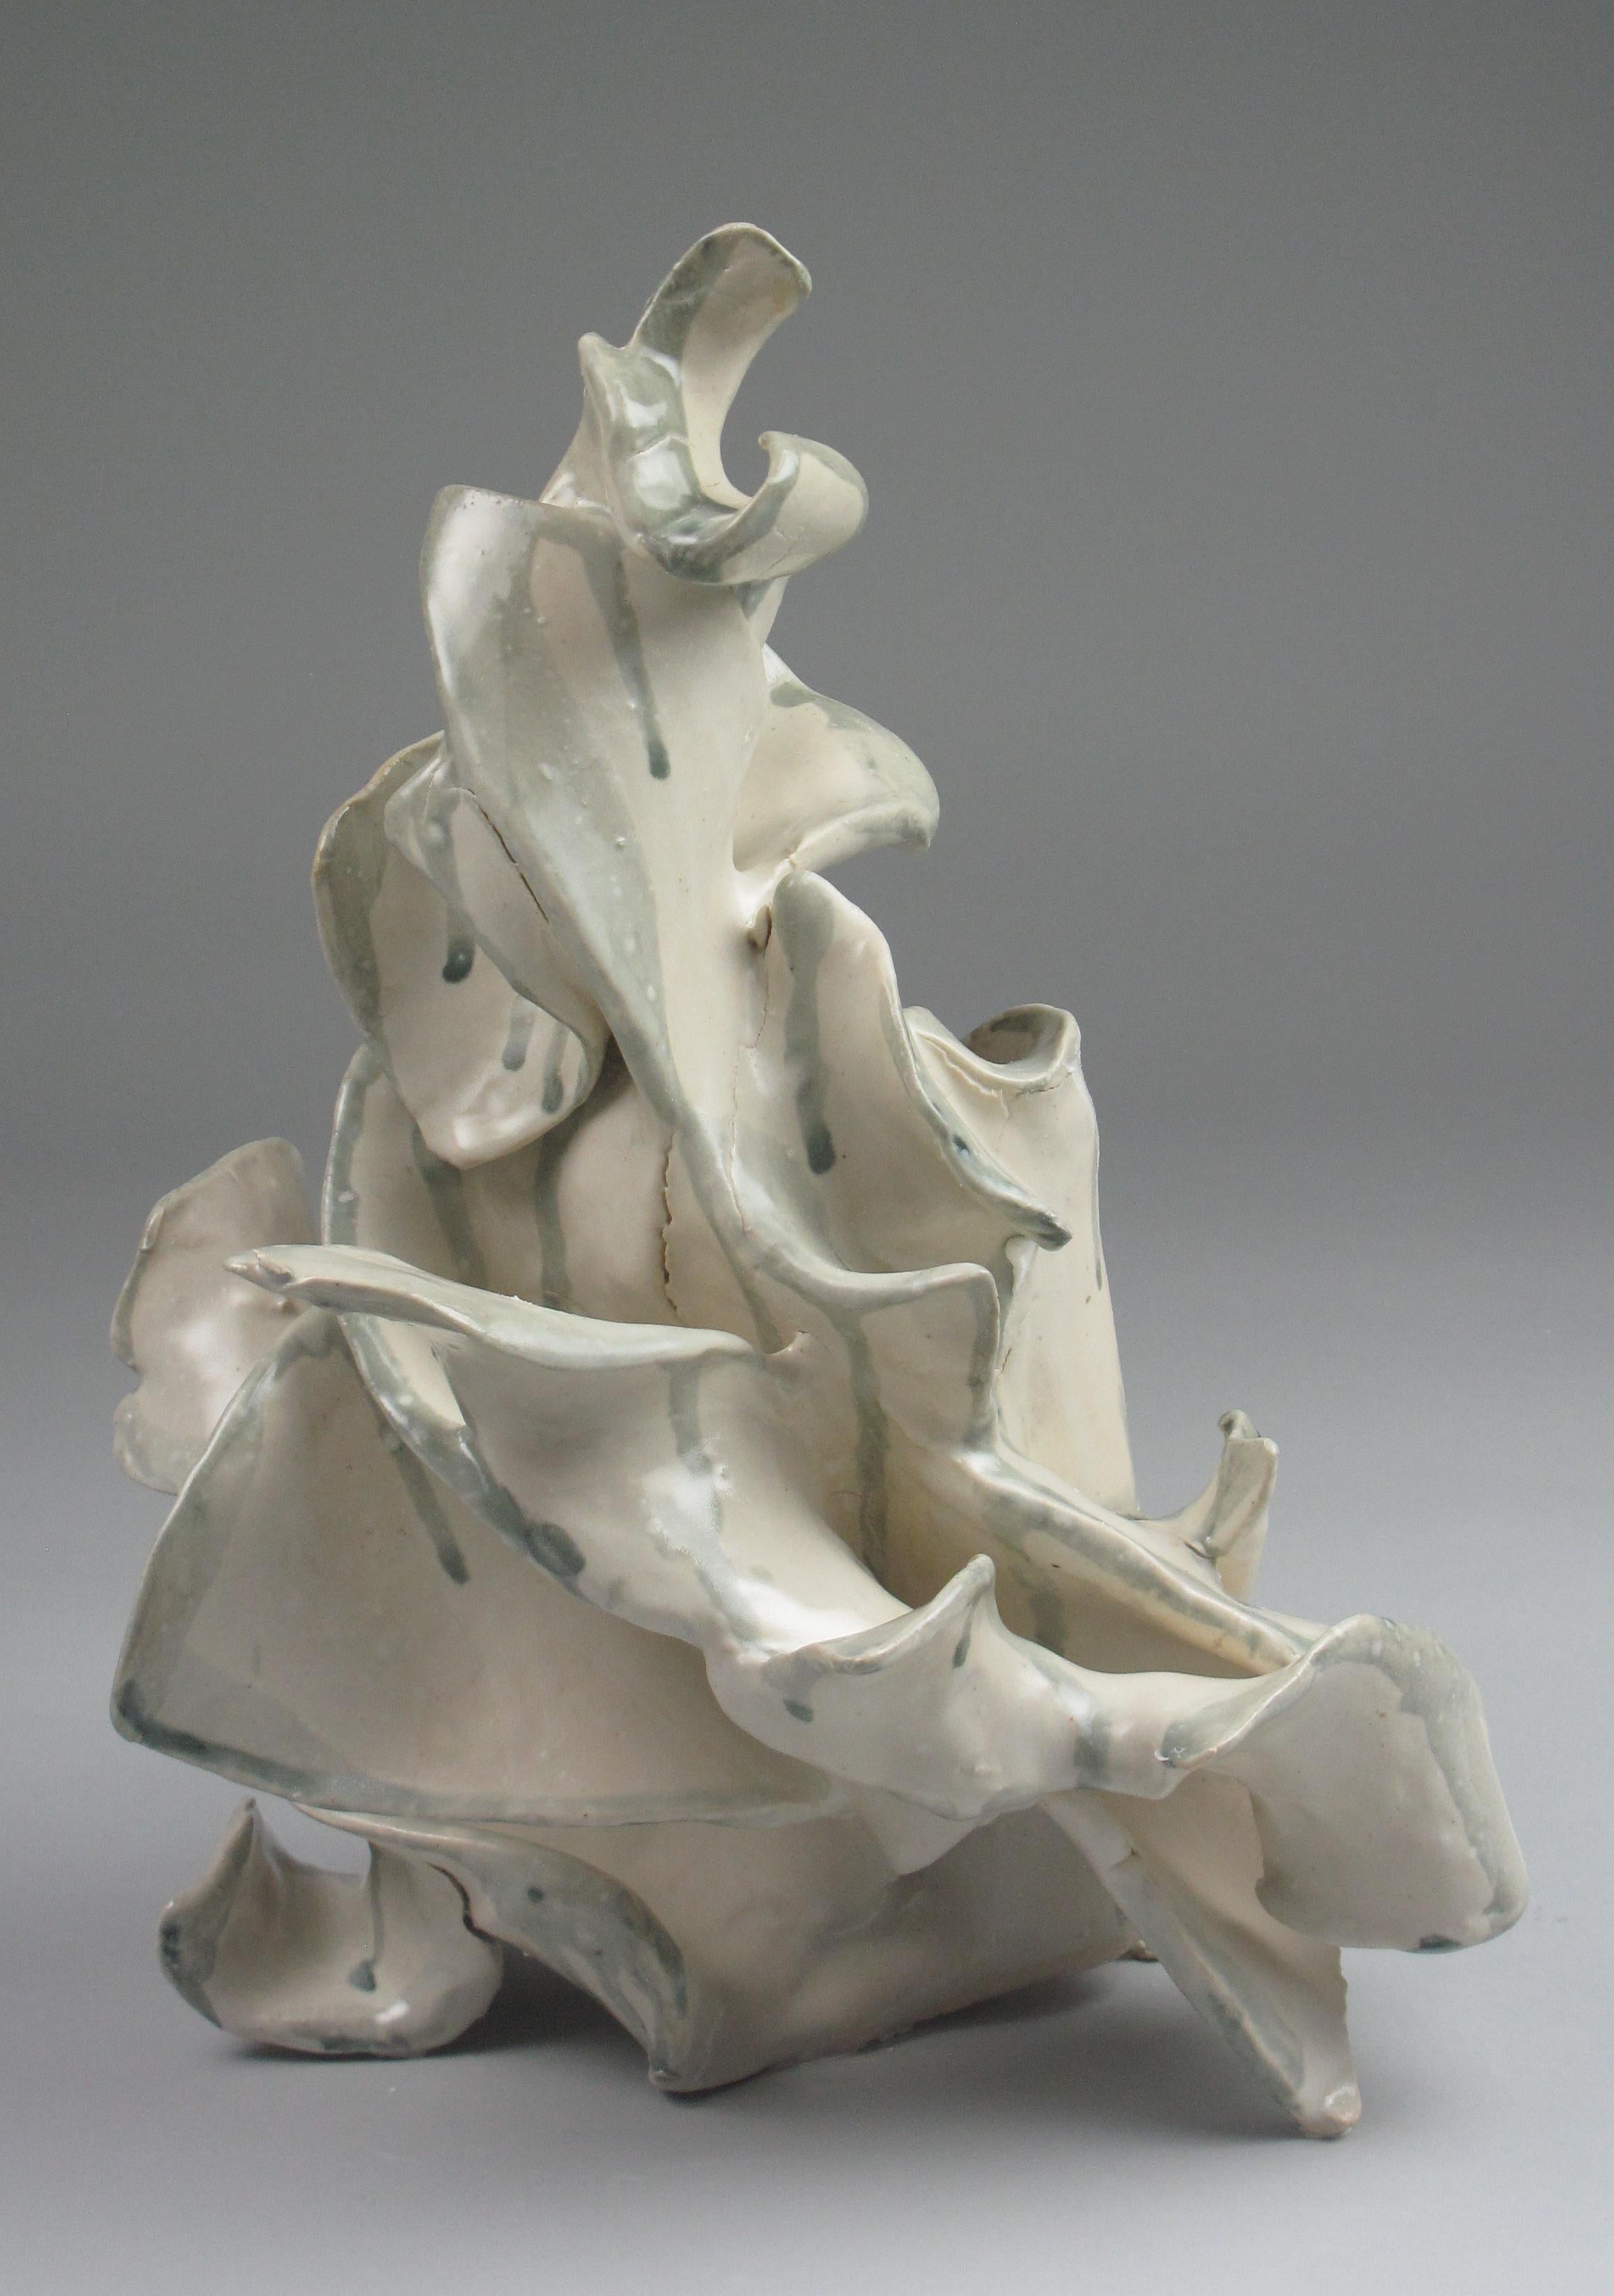 Sara Fine-Wilson Abstract Sculpture - "Polyp", gestural, ceramic, sculpture, white, cream, grey, teal, stoneware